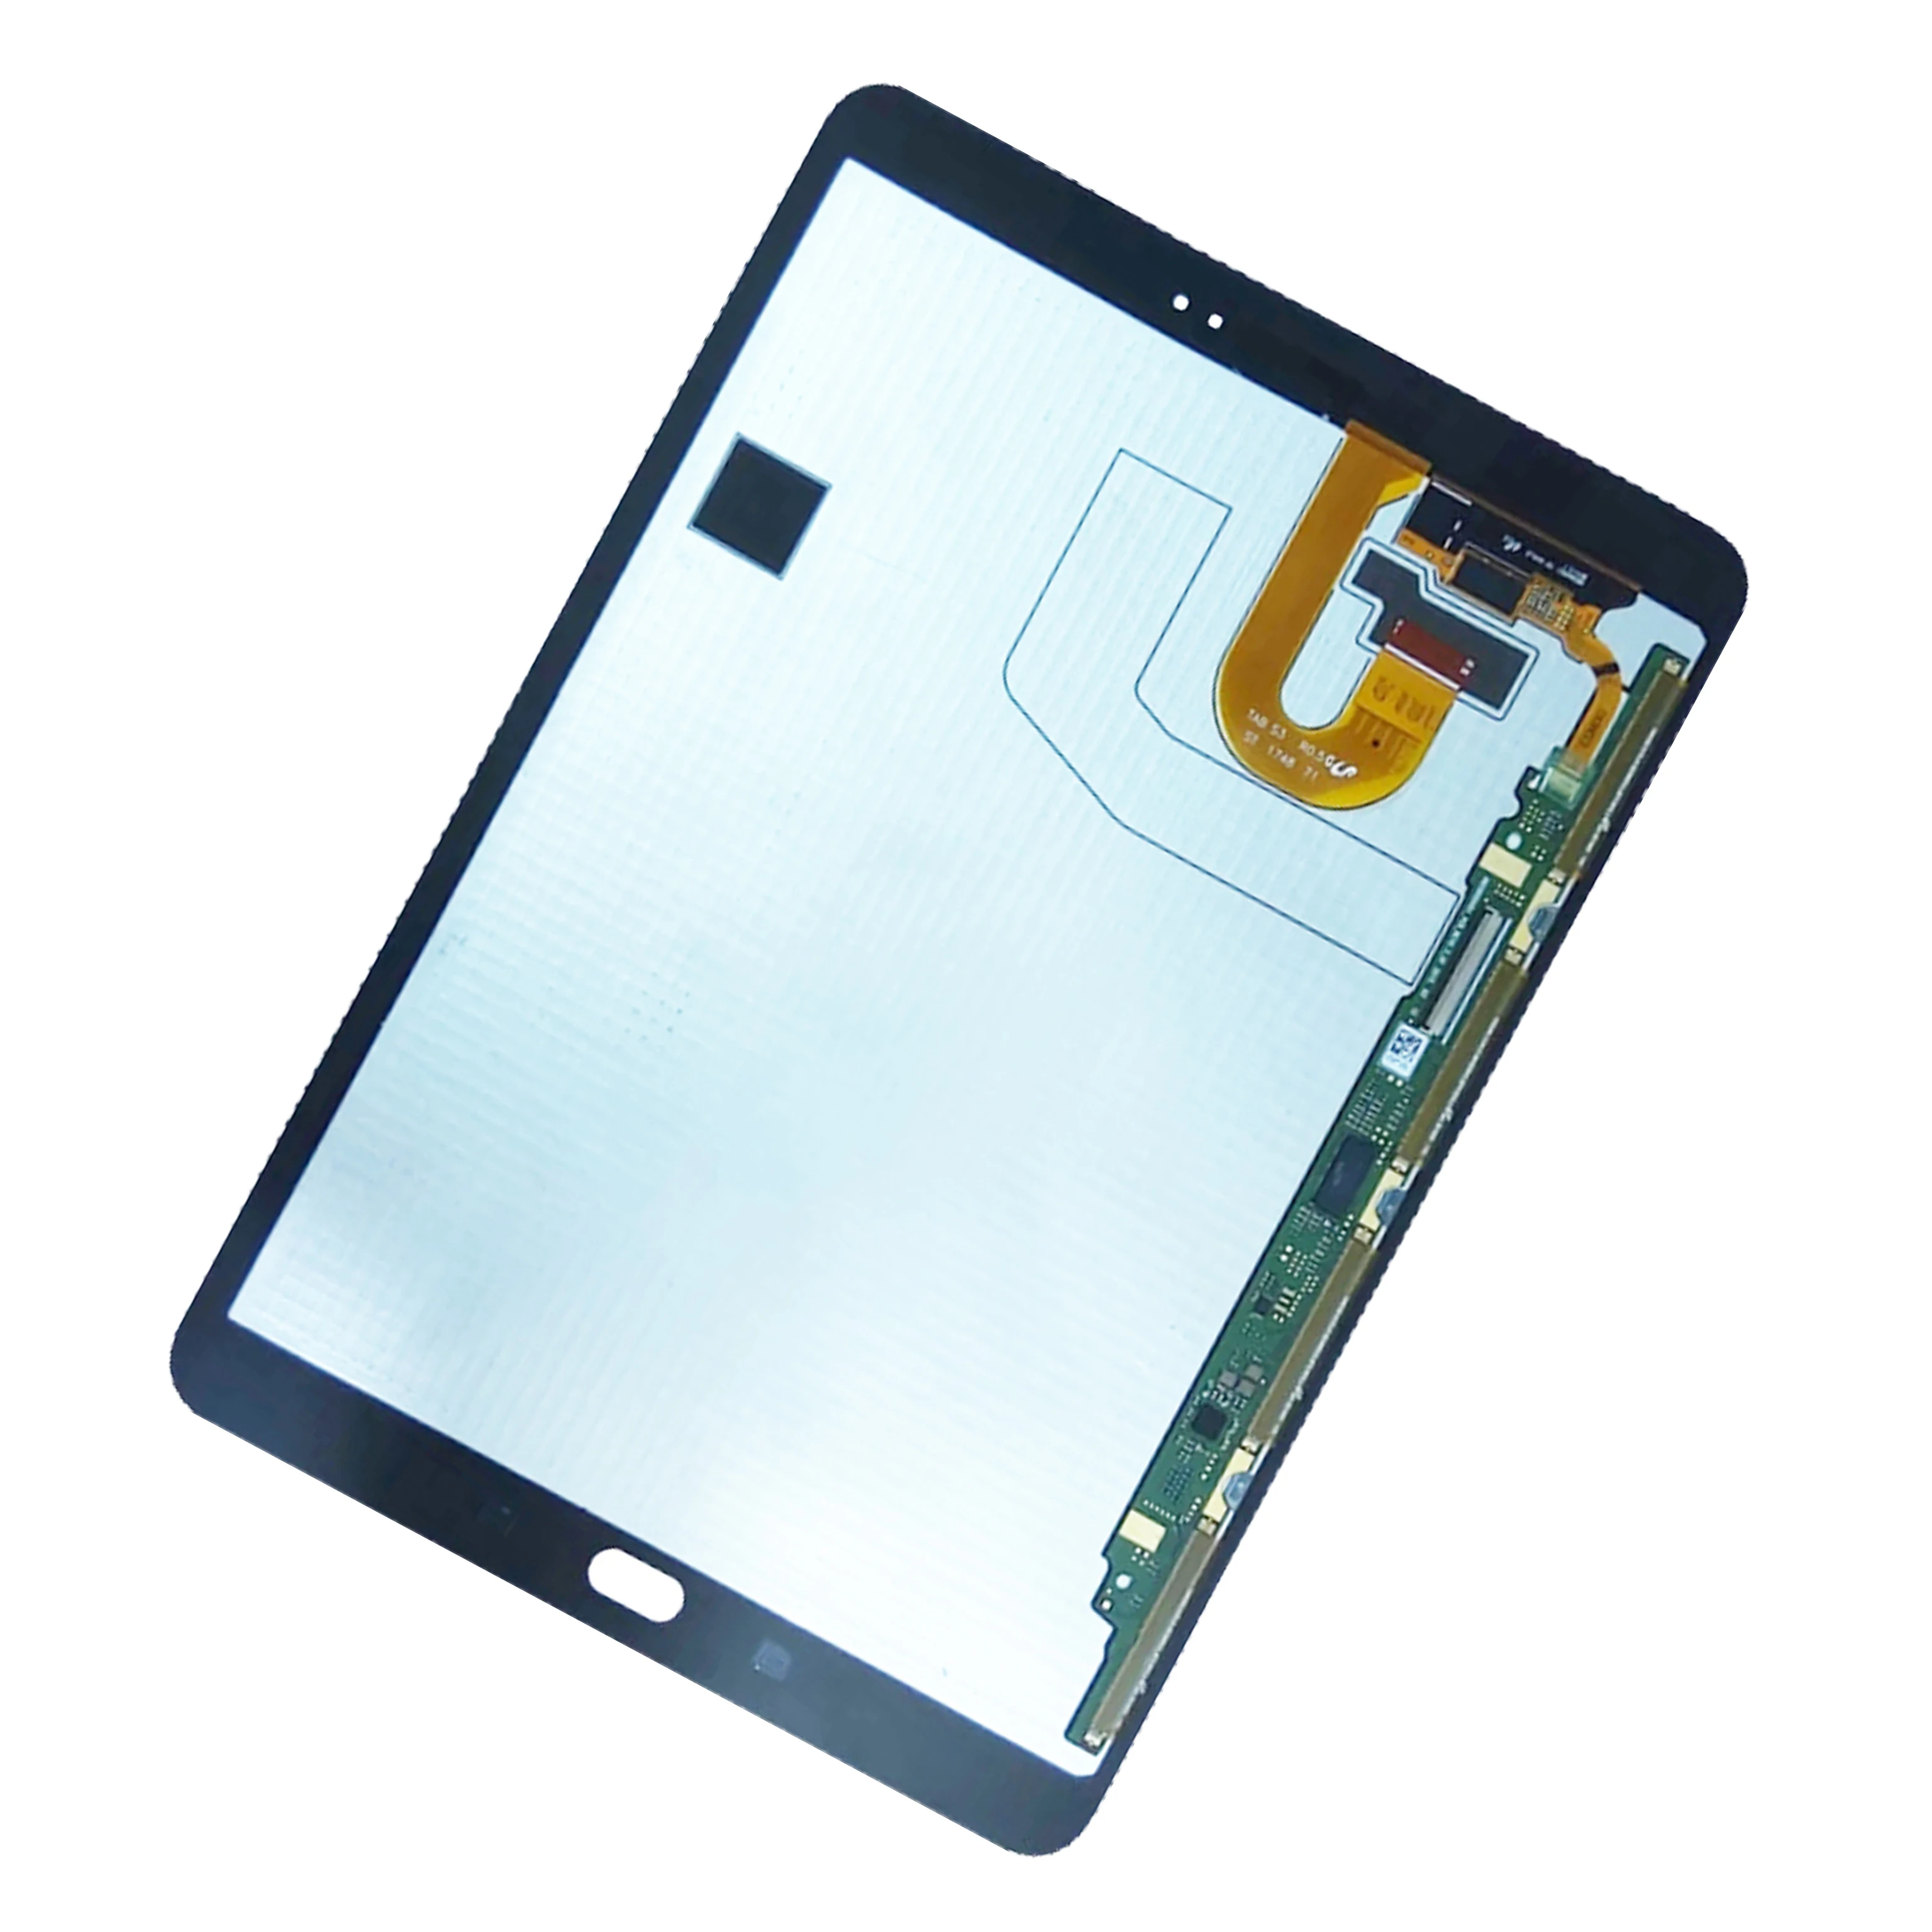 Оригинальный ЖК-экран Для Samsung Galaxy Tab S3 9,7 